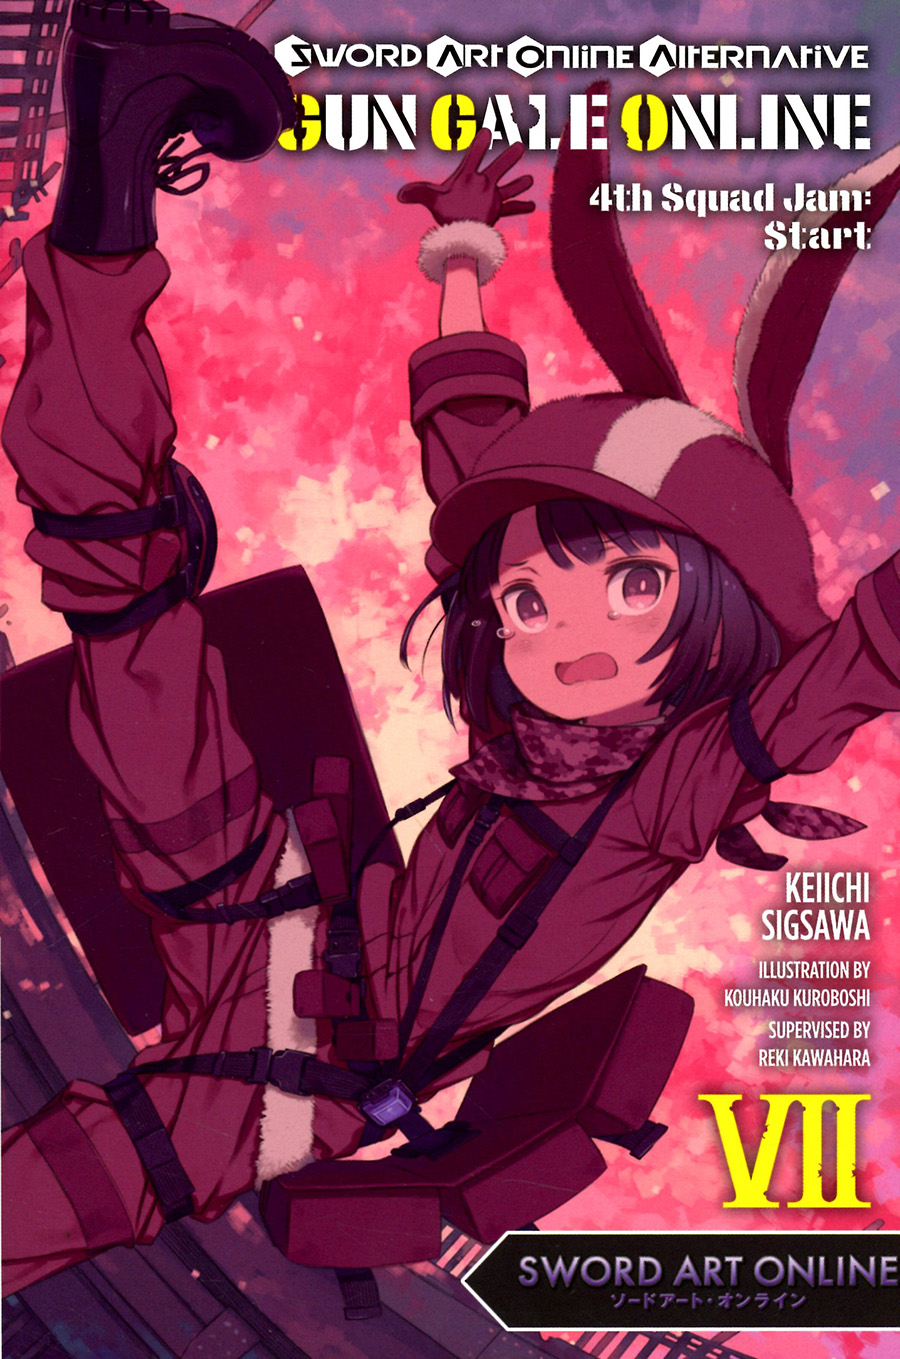 Sword Art Online Alternative Gun Gale Online Light Novel Vol 7 4th Squad Jam Start